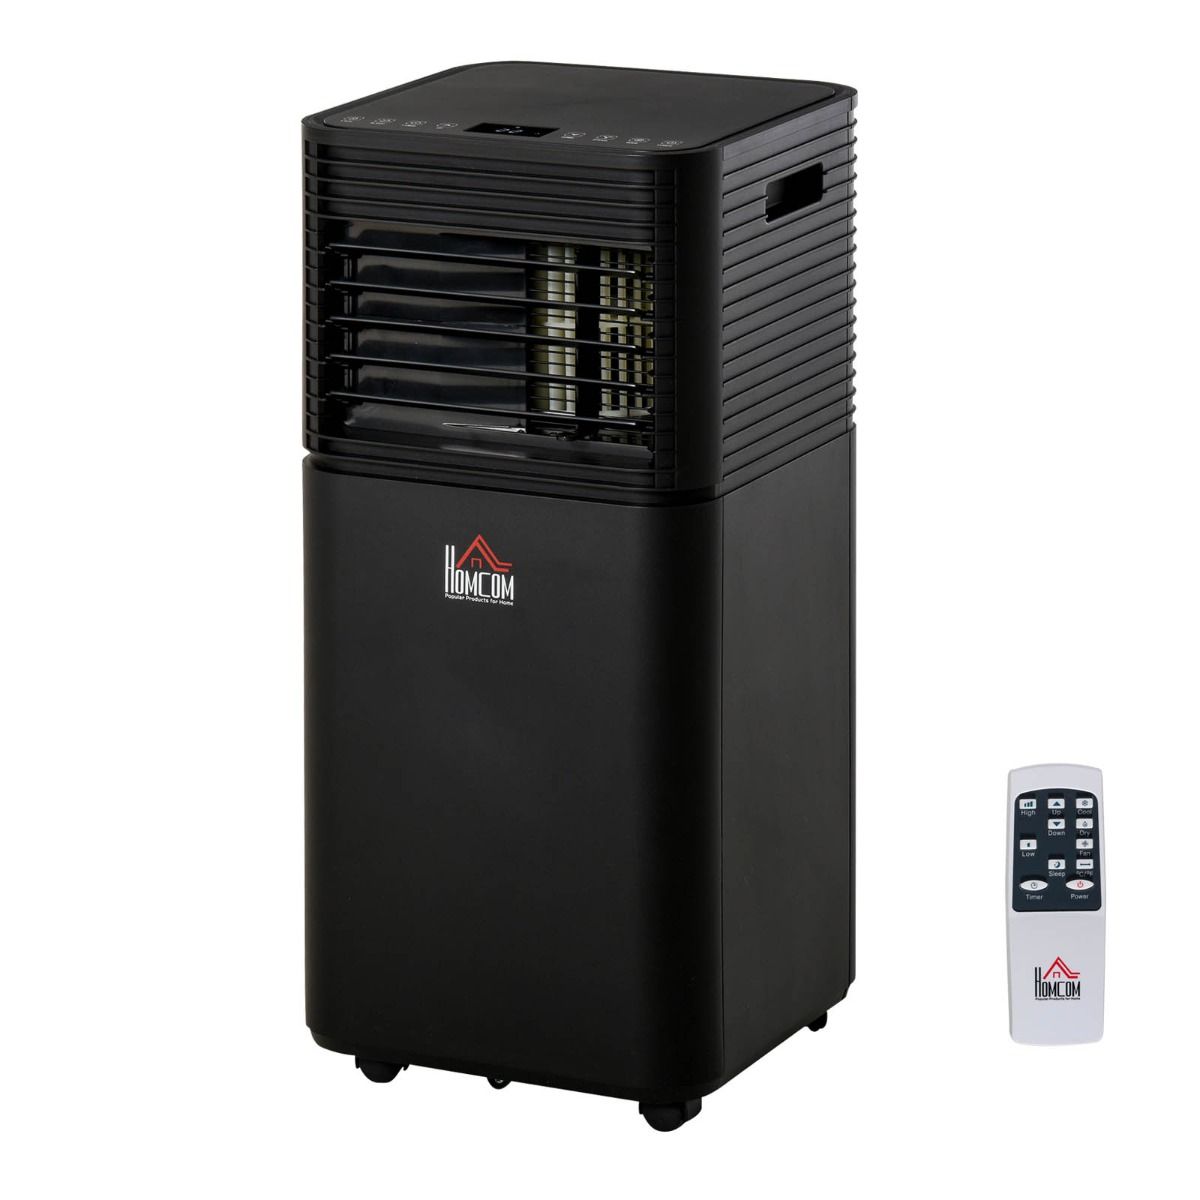 Homcom 4-in-1 Portable Air Conditioner Unit, Black - 7000 BTU